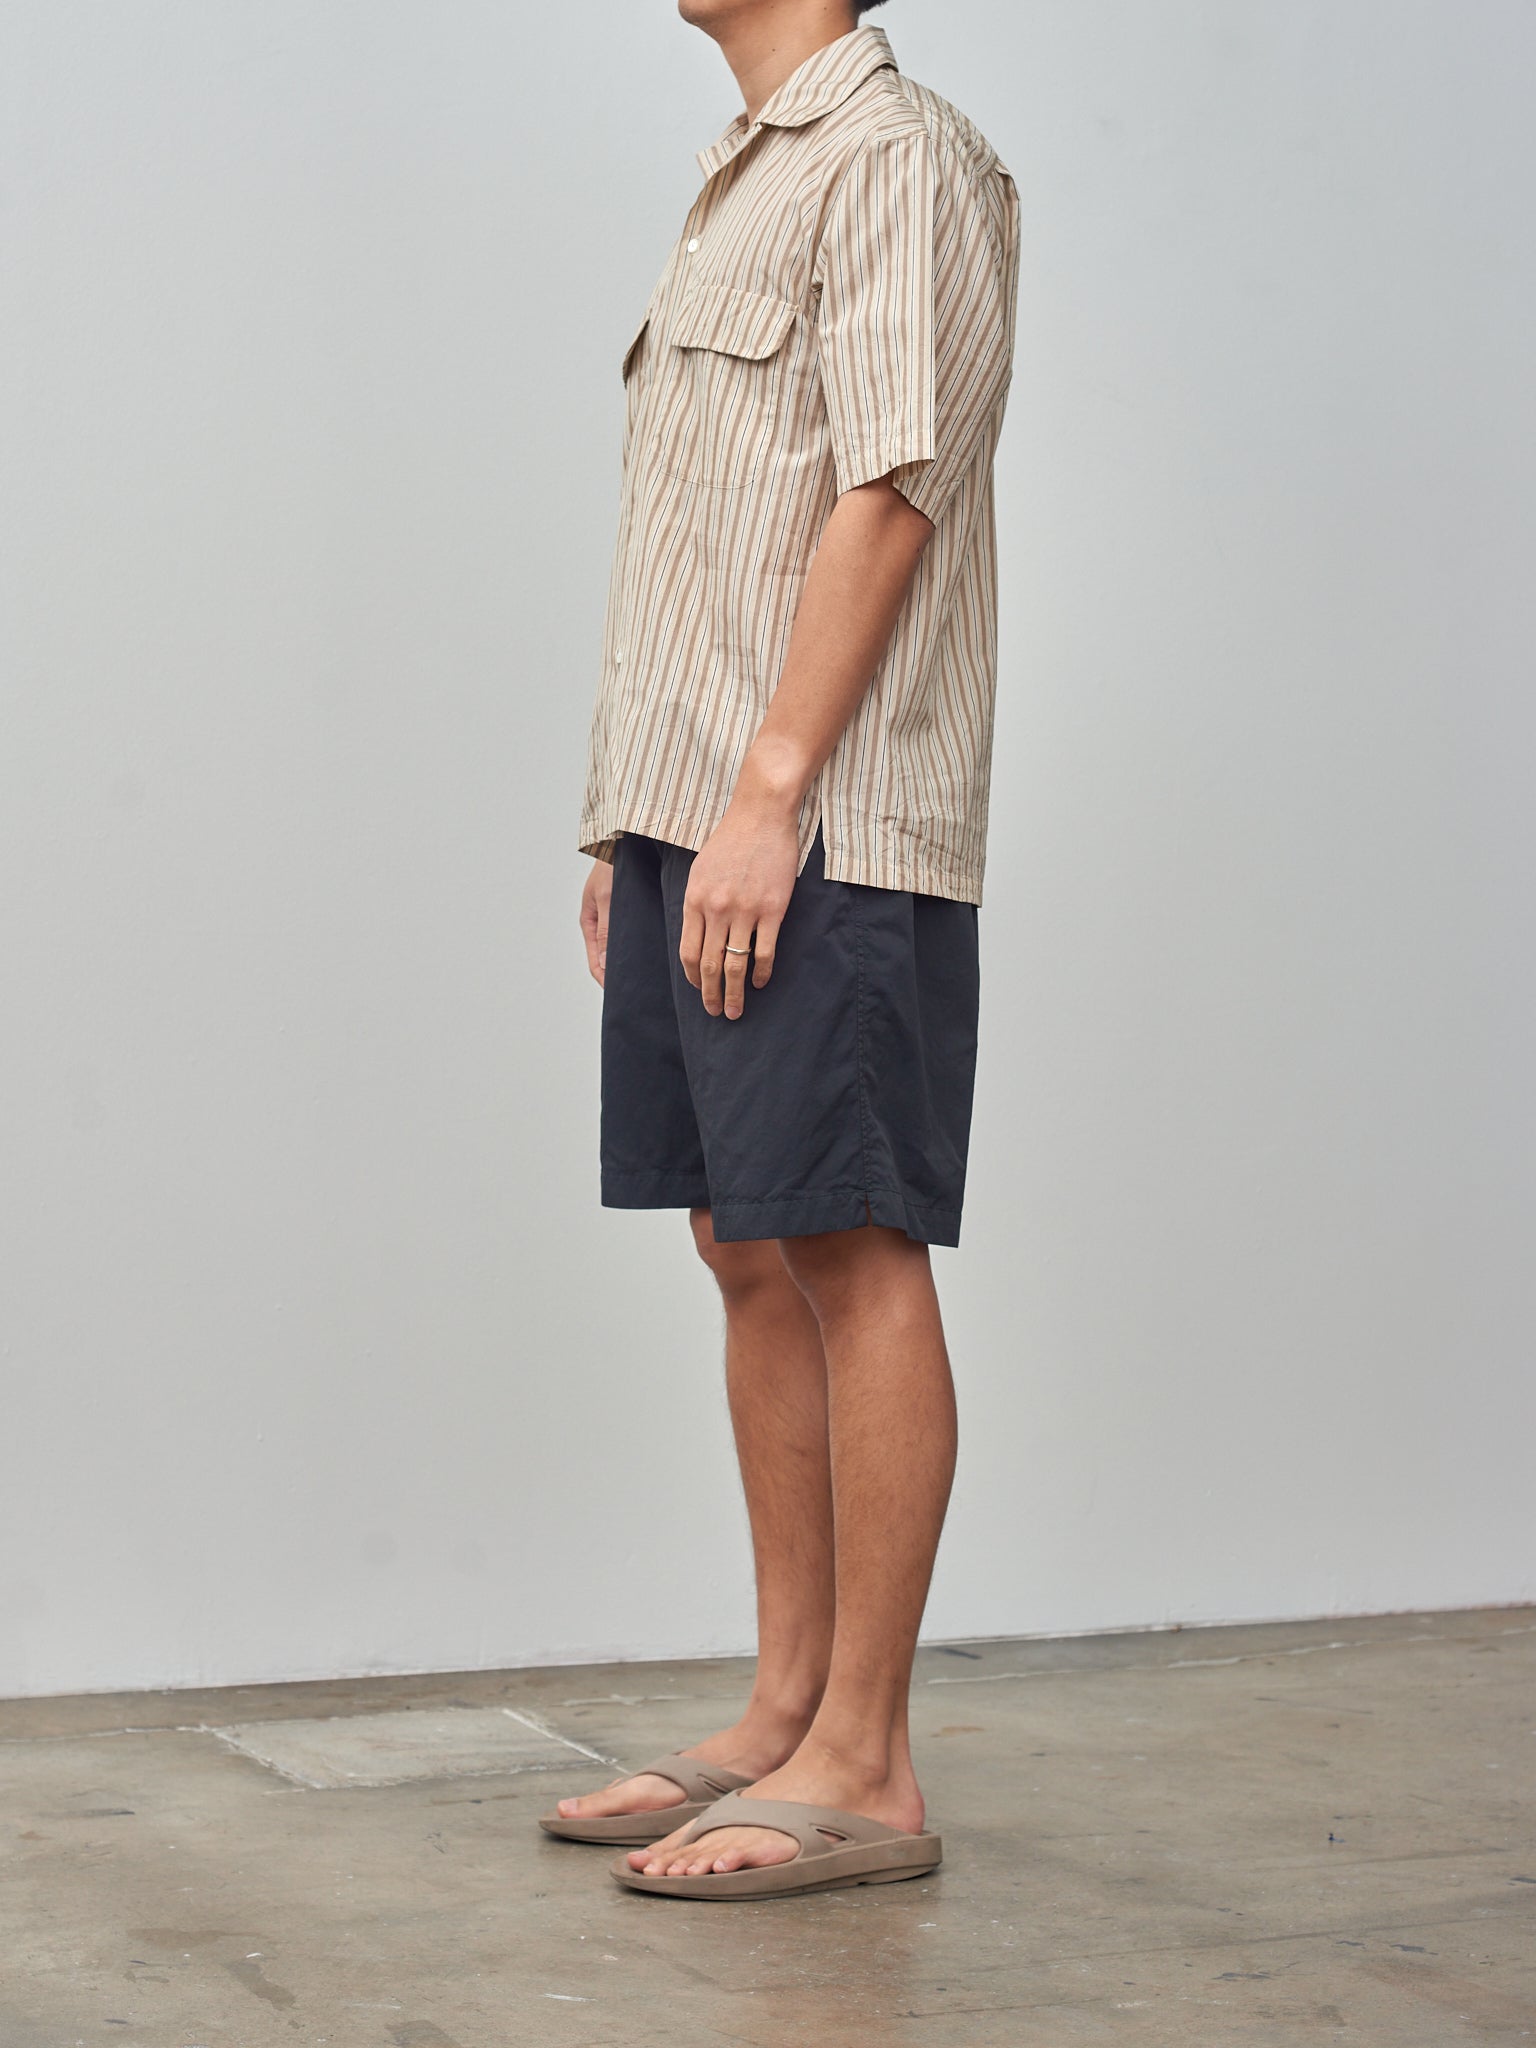 Namu Shop - Kaptain Sunshine Short Sleeve Open Collar Shirt - Beige Stripe